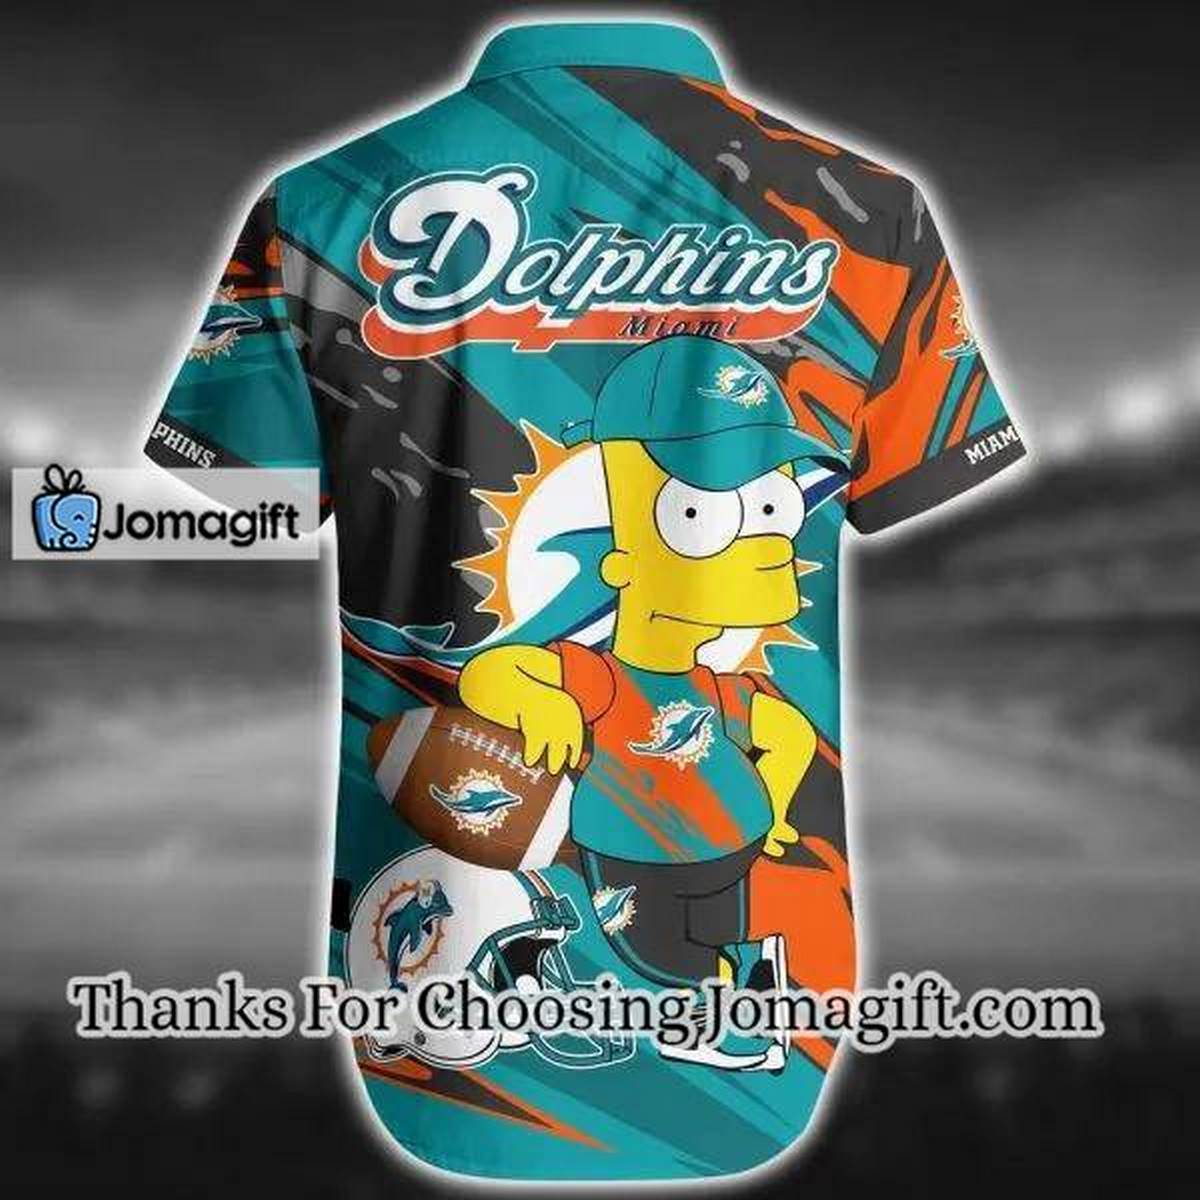 NFL Miami Dolphins The Simpsons Aqua Hawaiian Shirt Aloha Shirt 2